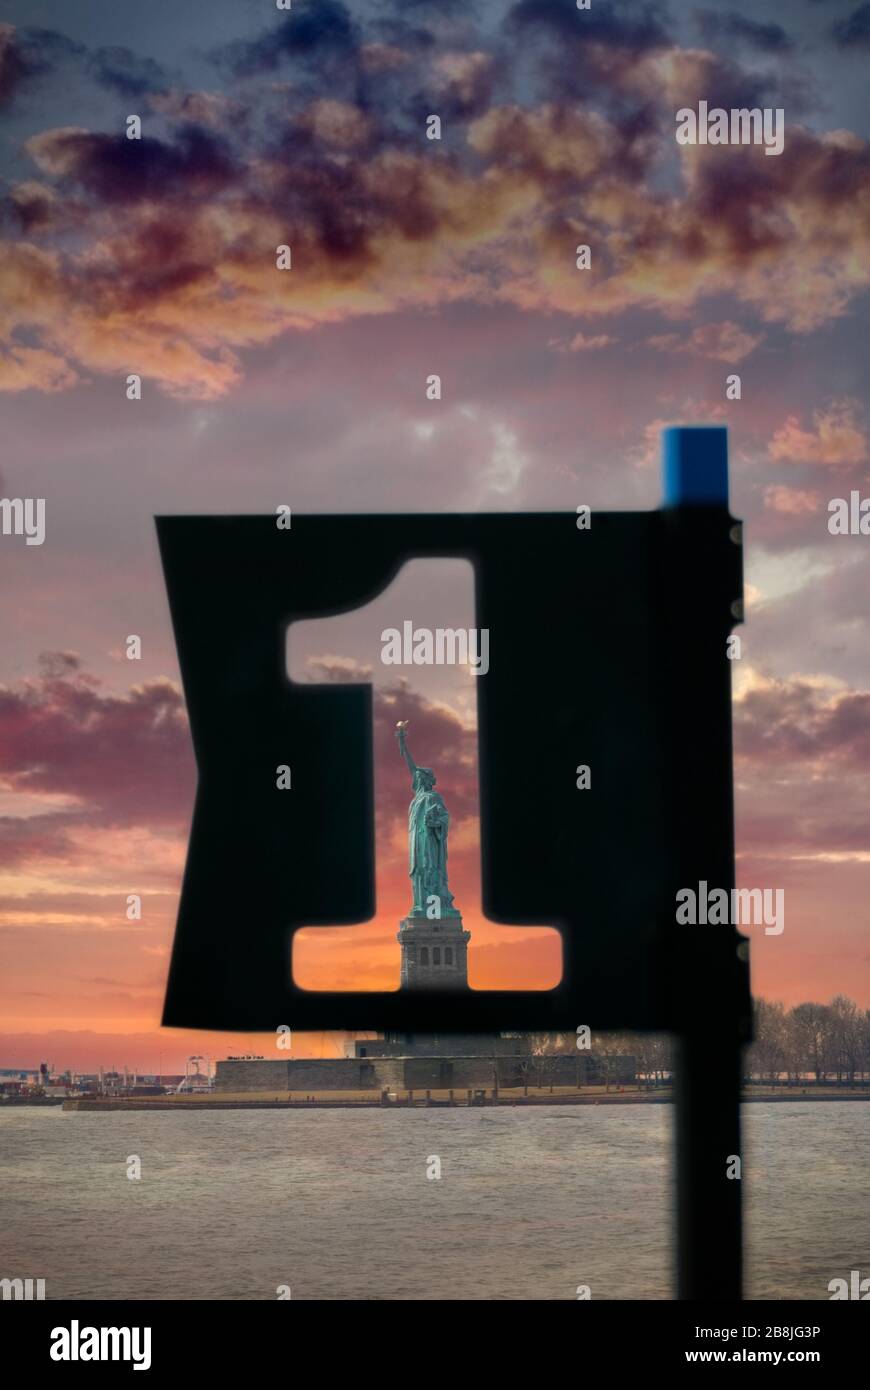 Amerika An Erster Stelle. Freiheitsstatue in New York, Vereinigte Staaten von Amerika, durch ein Hafenschild mit der Nummer 1 herausgeschnitten. Amerika #1. Stockfoto